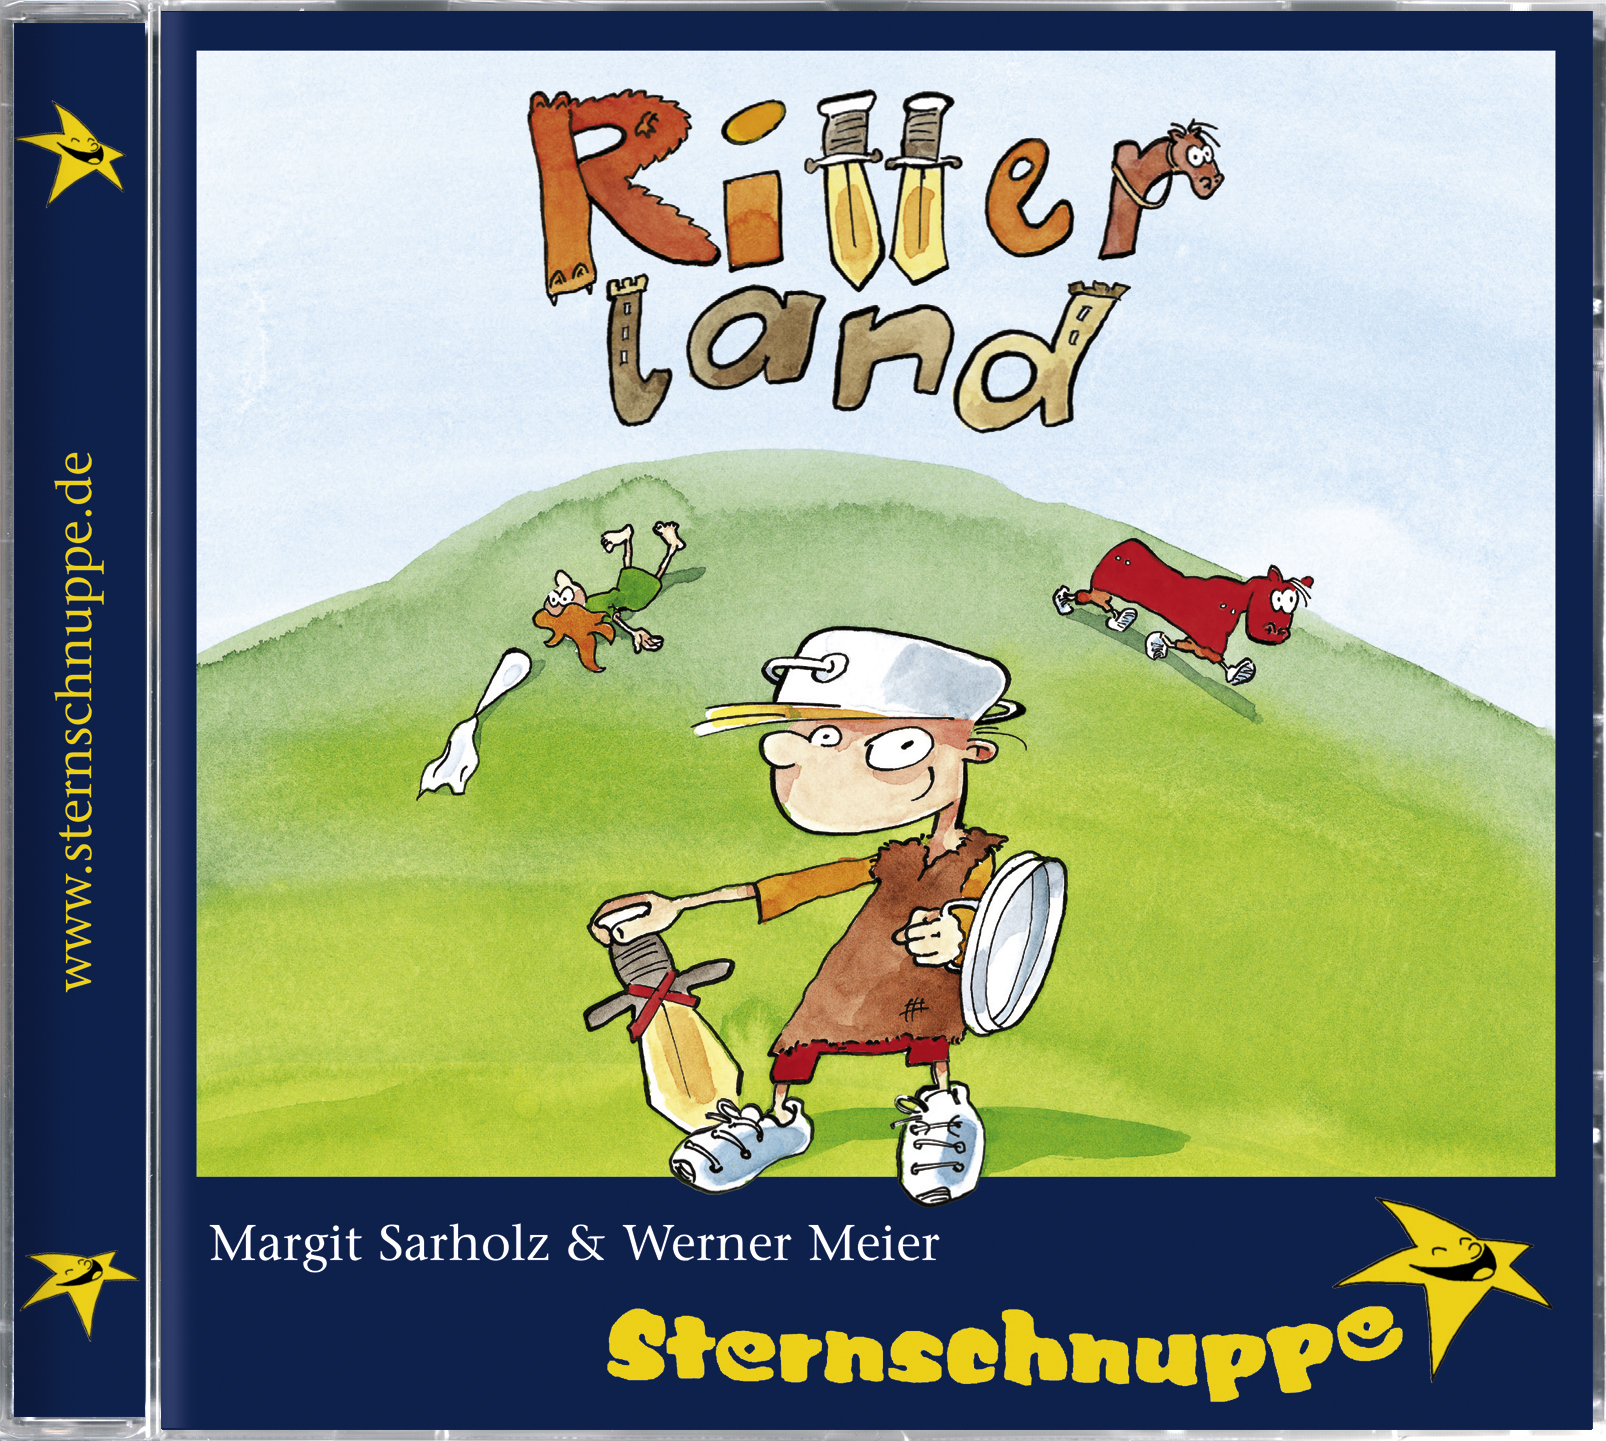 Sternschnuppe - Ritterland